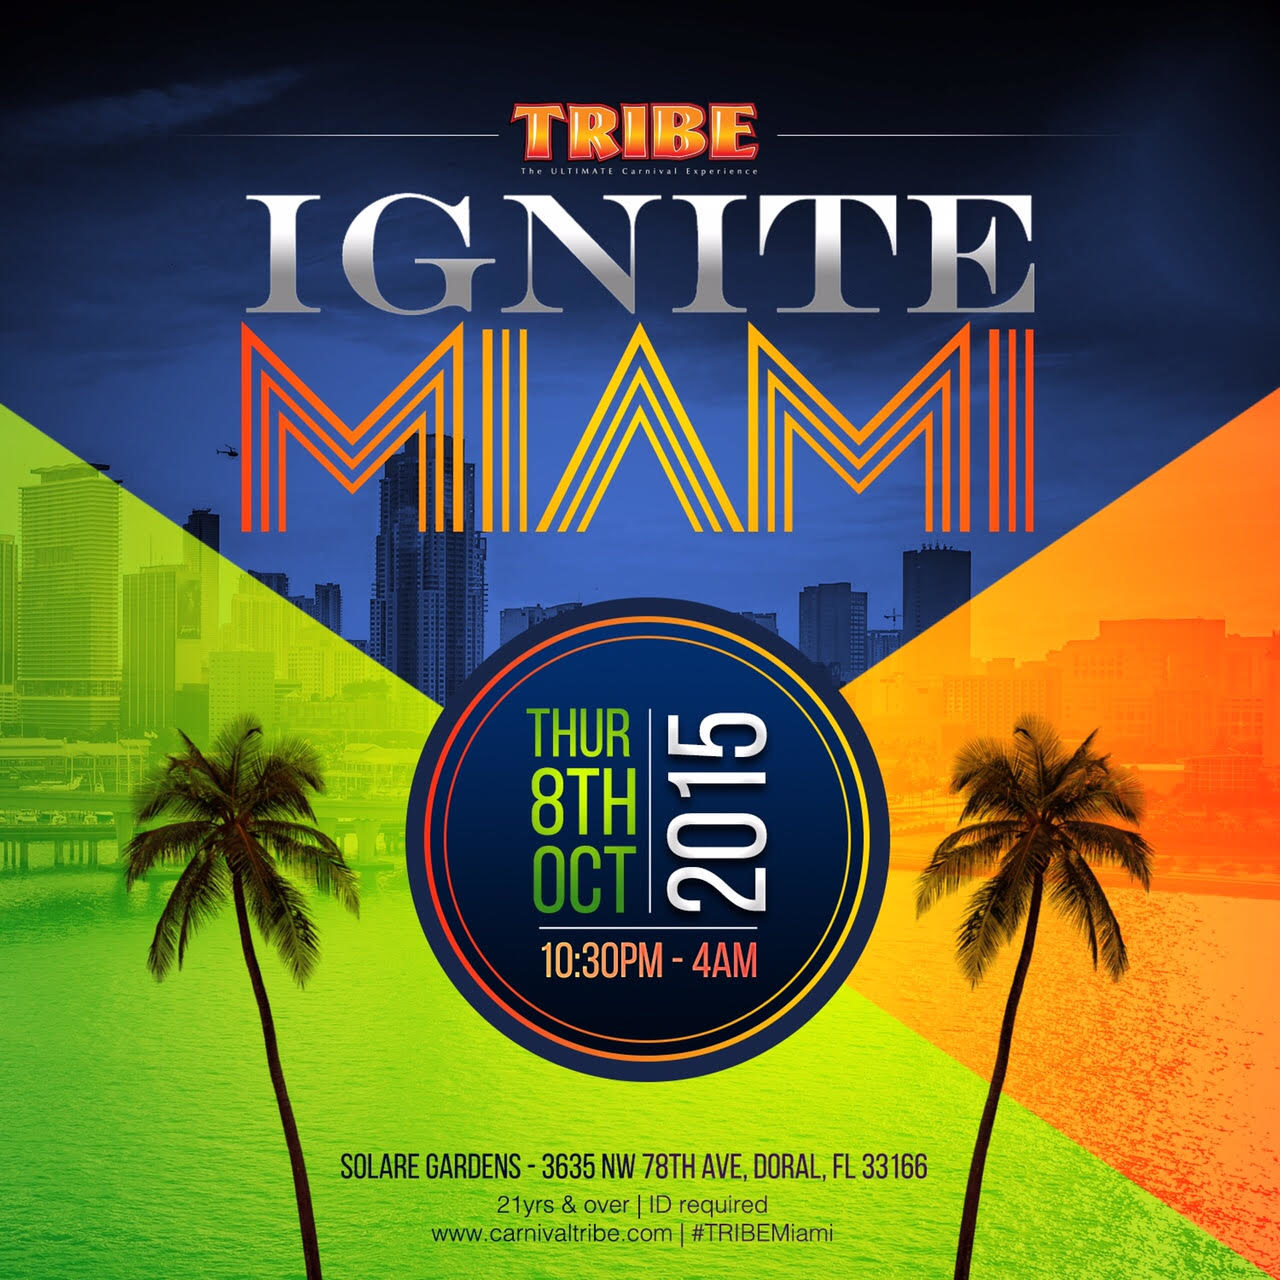 TRIBE IGNITE Miami 2015